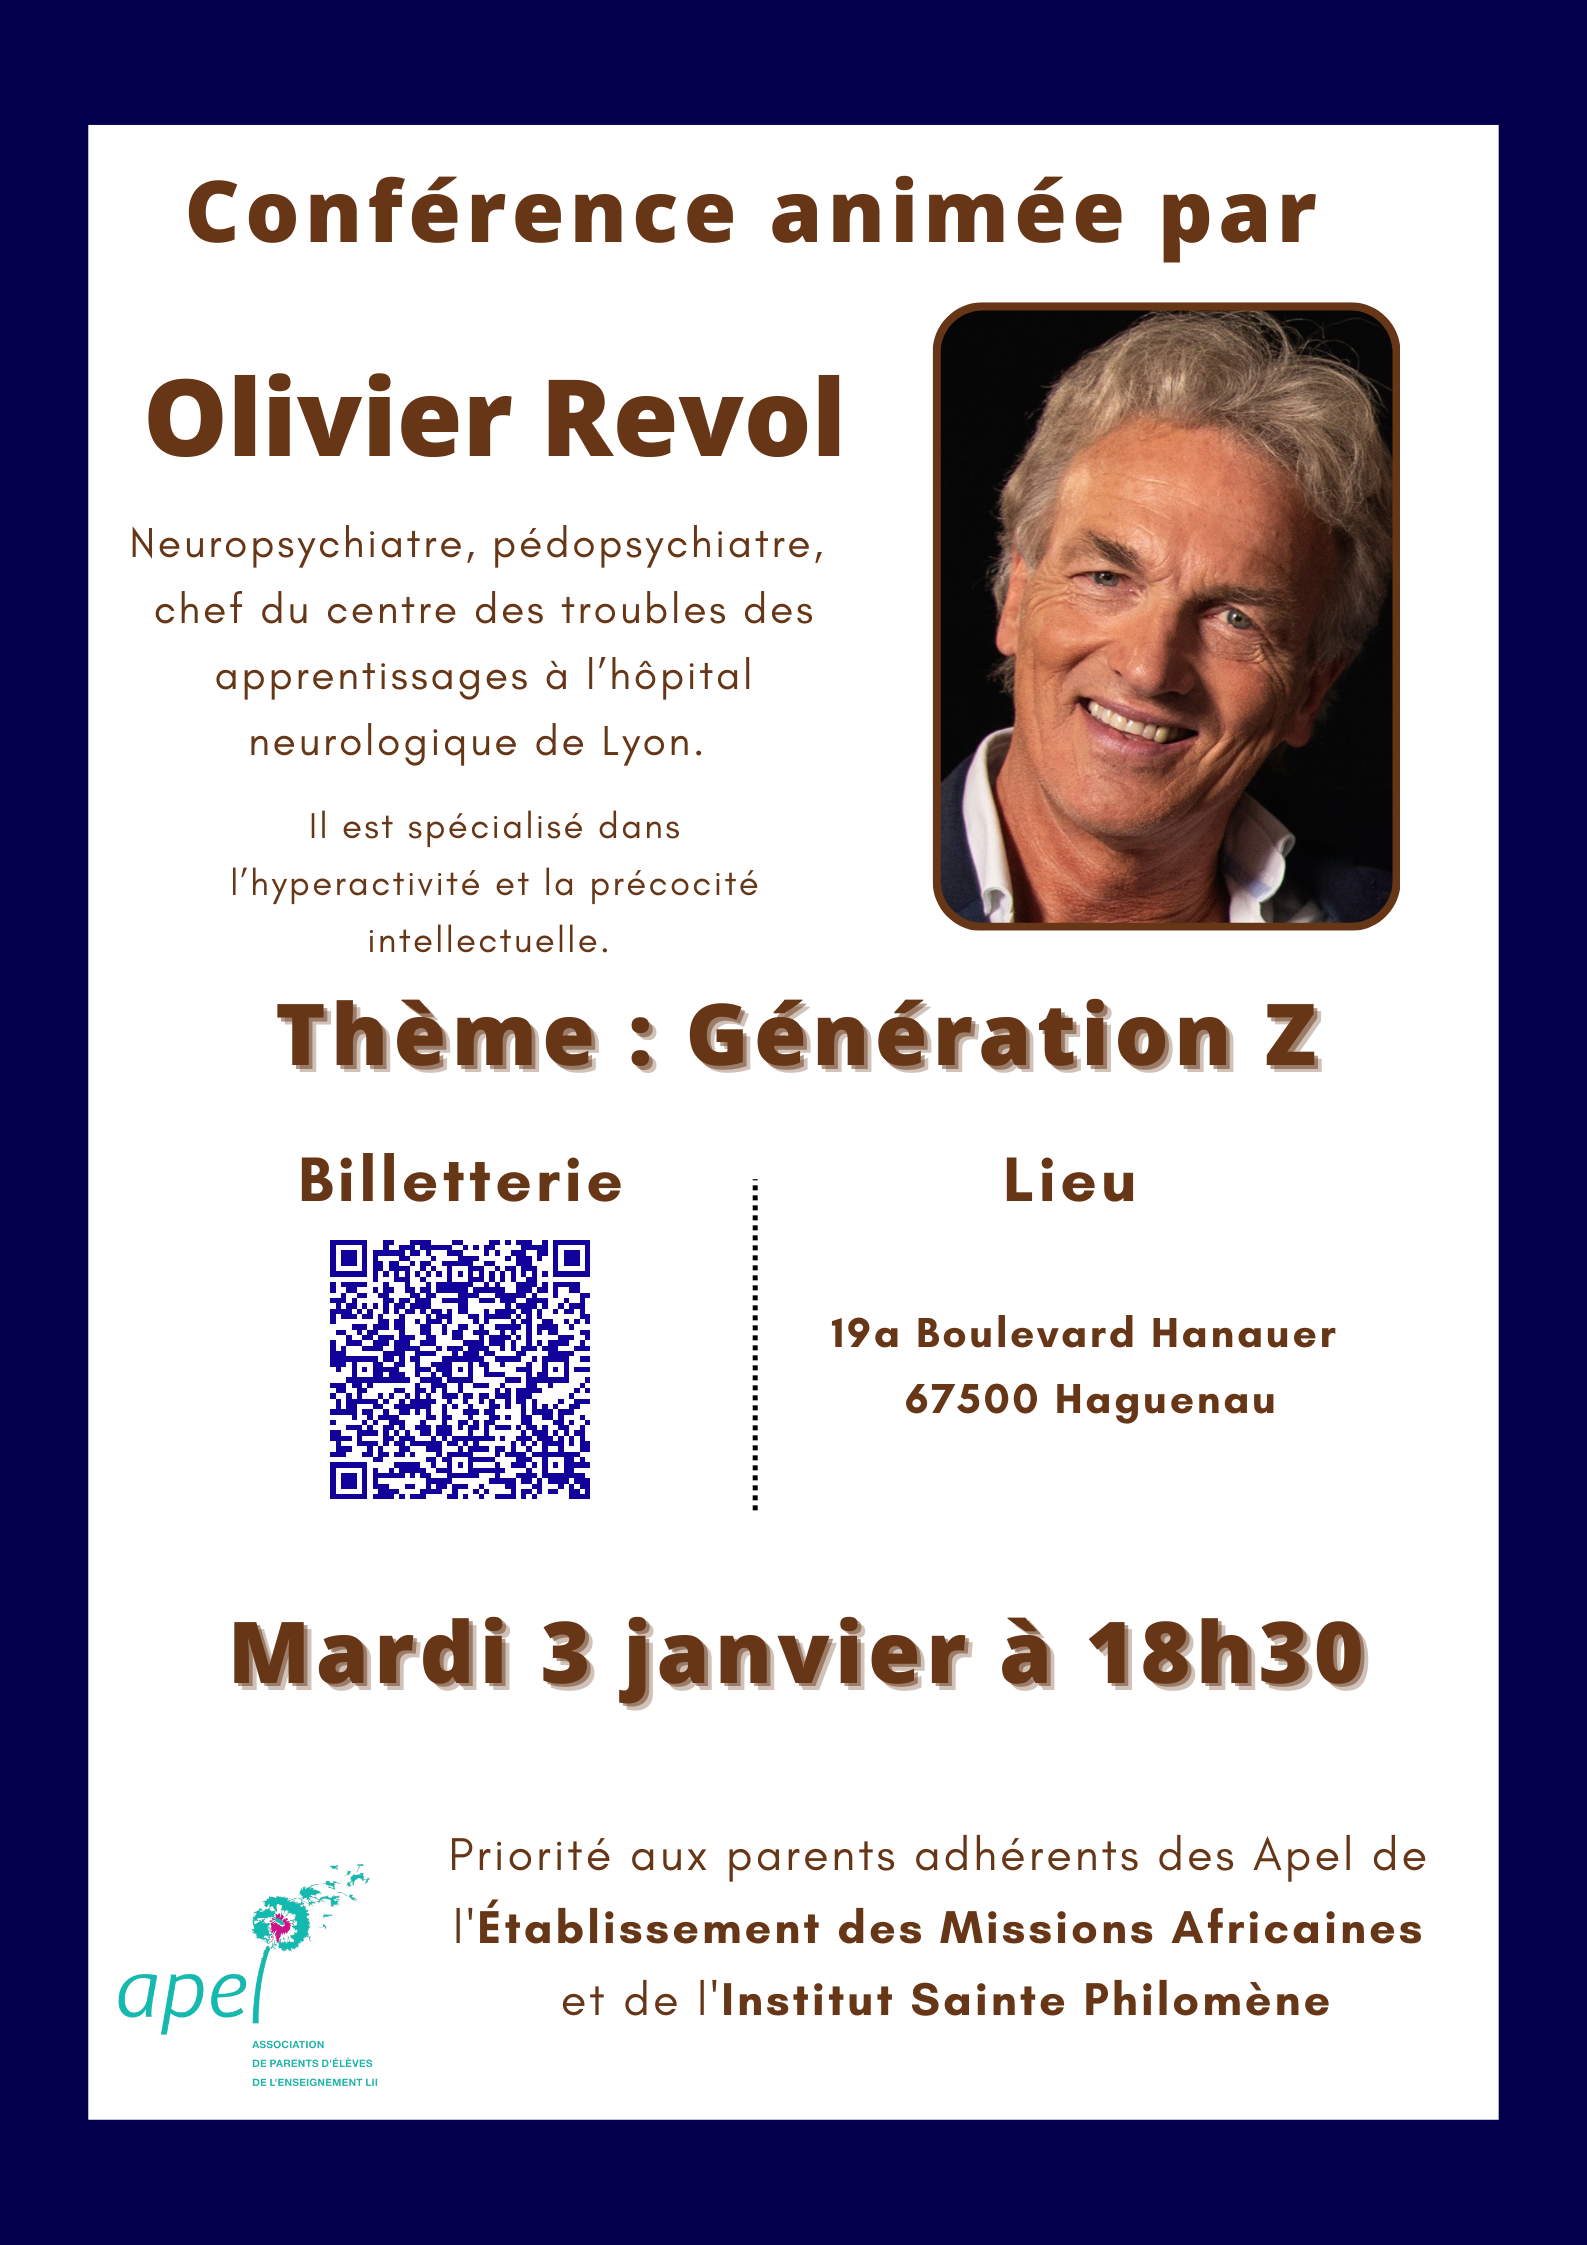 Olivier_Revol_p1